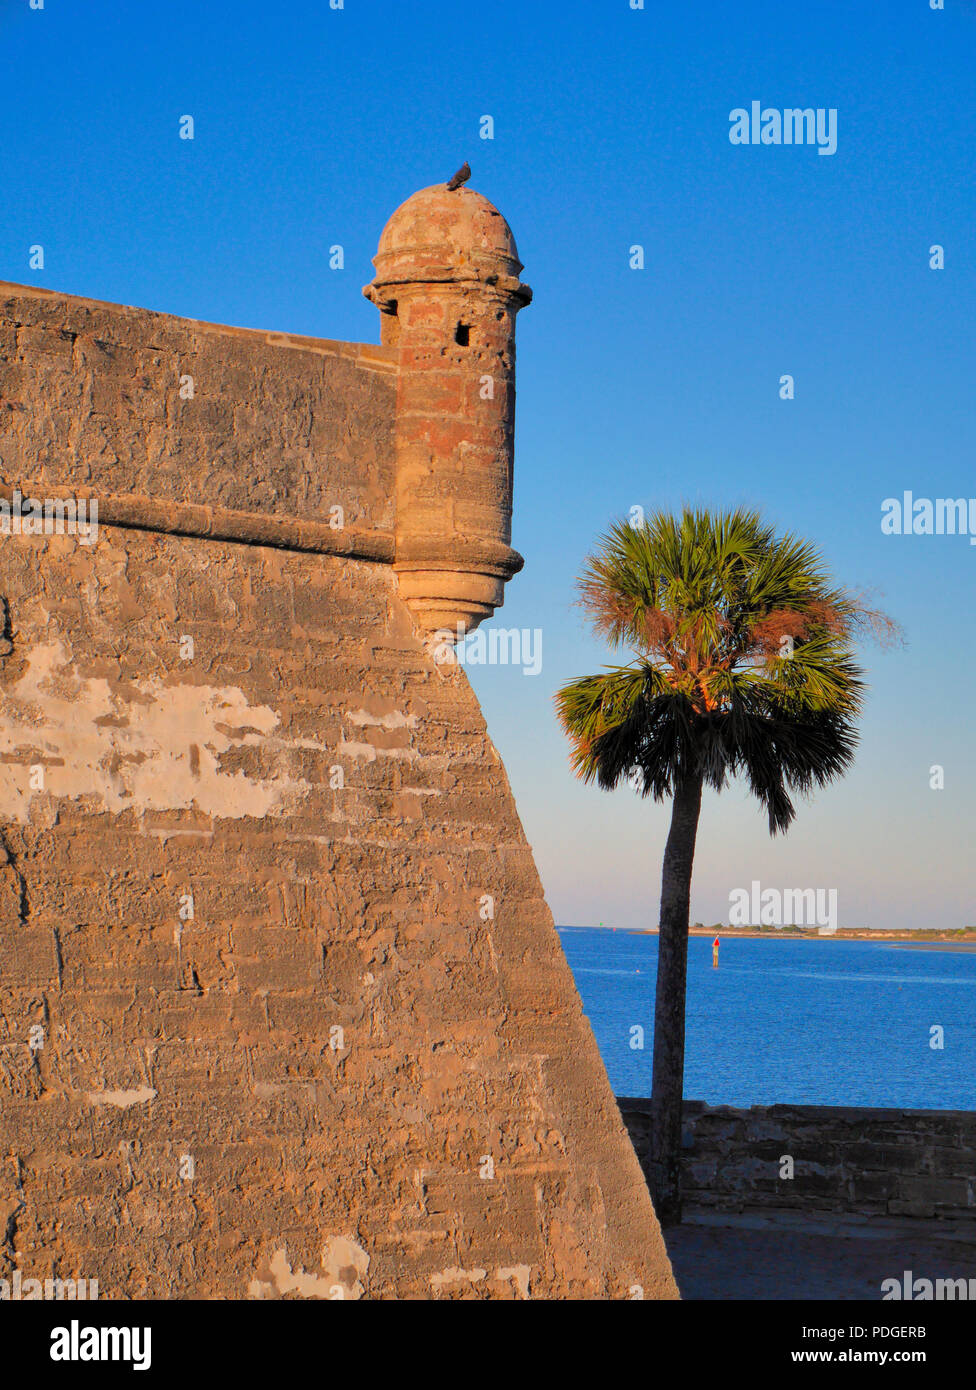 Castillo de San Marcos, St. Augustine, FL, die älteste gemauerte Festung in den USA. Erbaut von den Spaniern Anfang 1672. Stockfoto